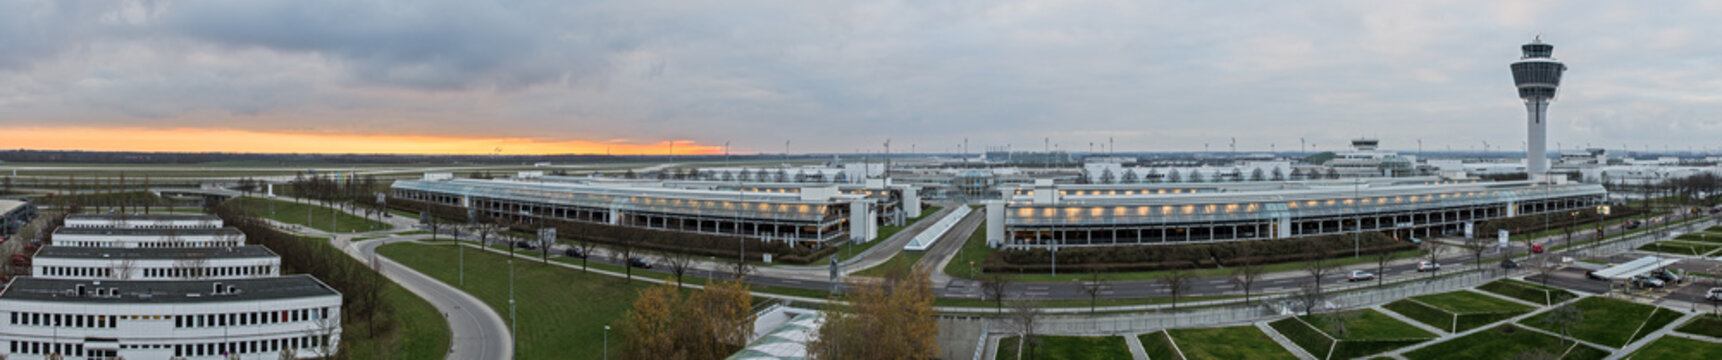 Flughafen Panoramafoto